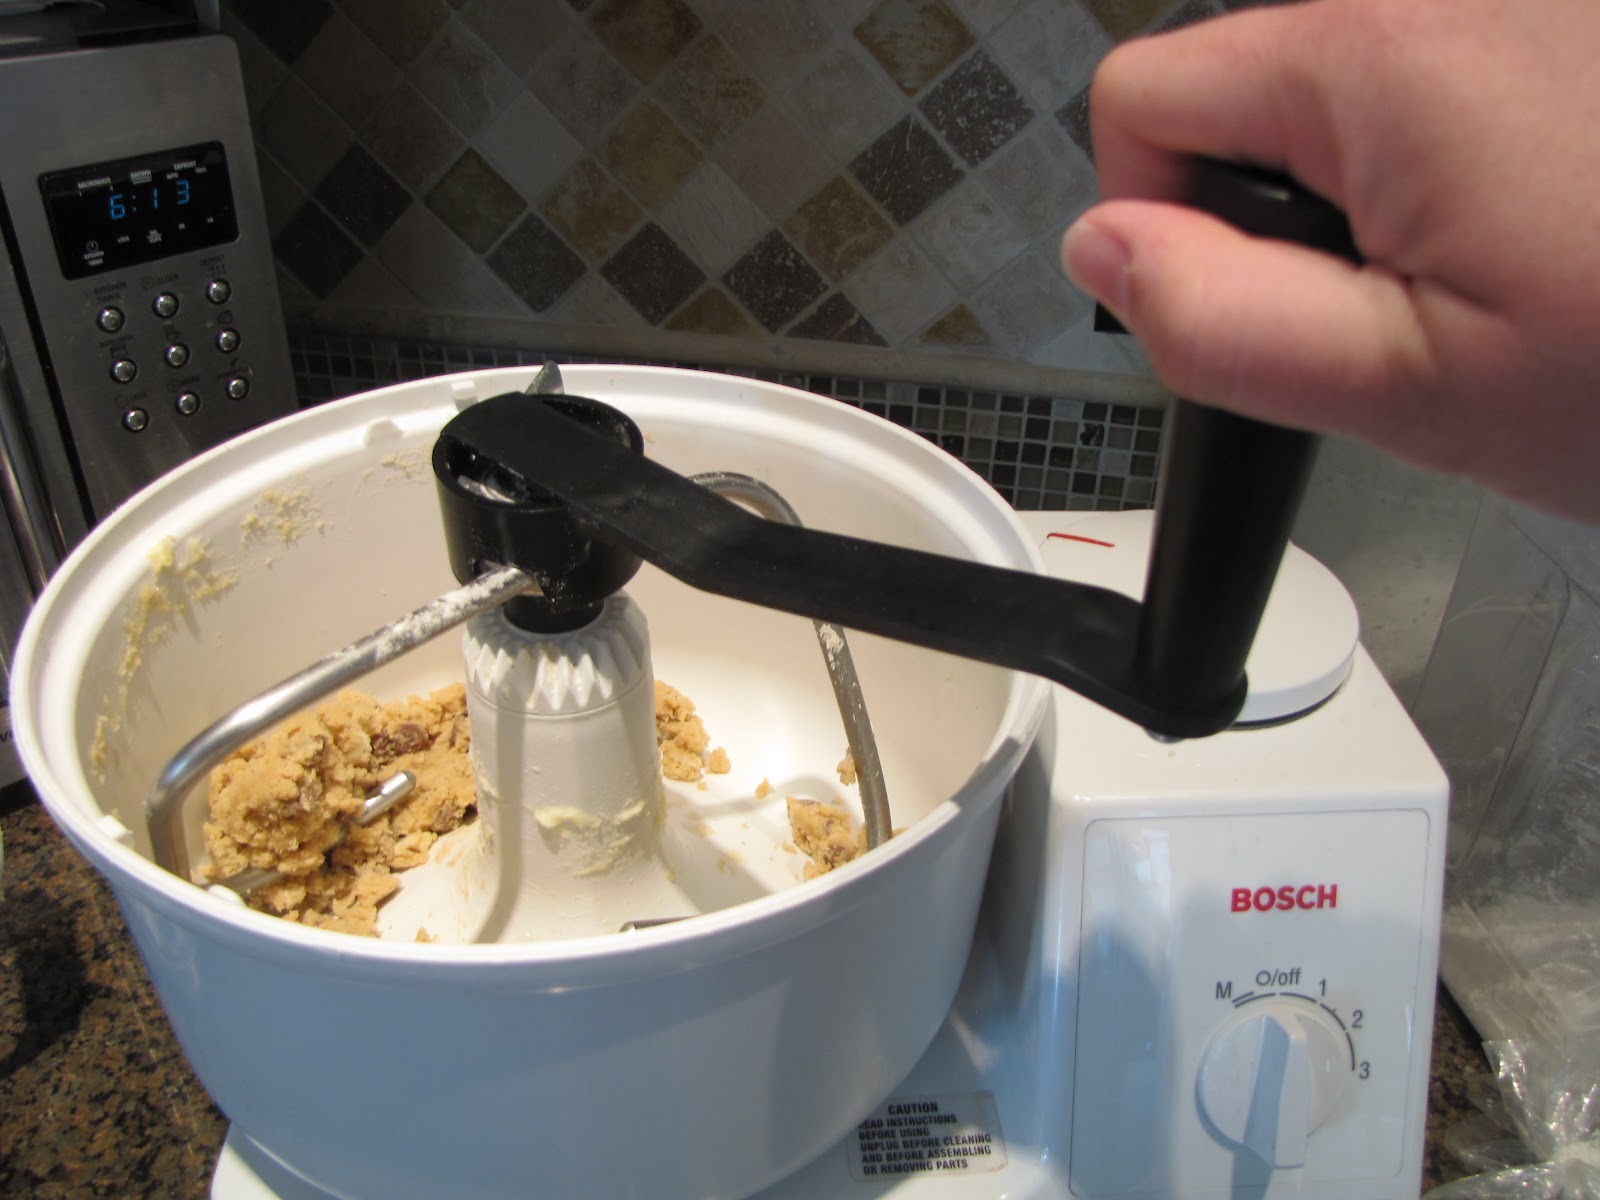 Hand-cranked dough mixer